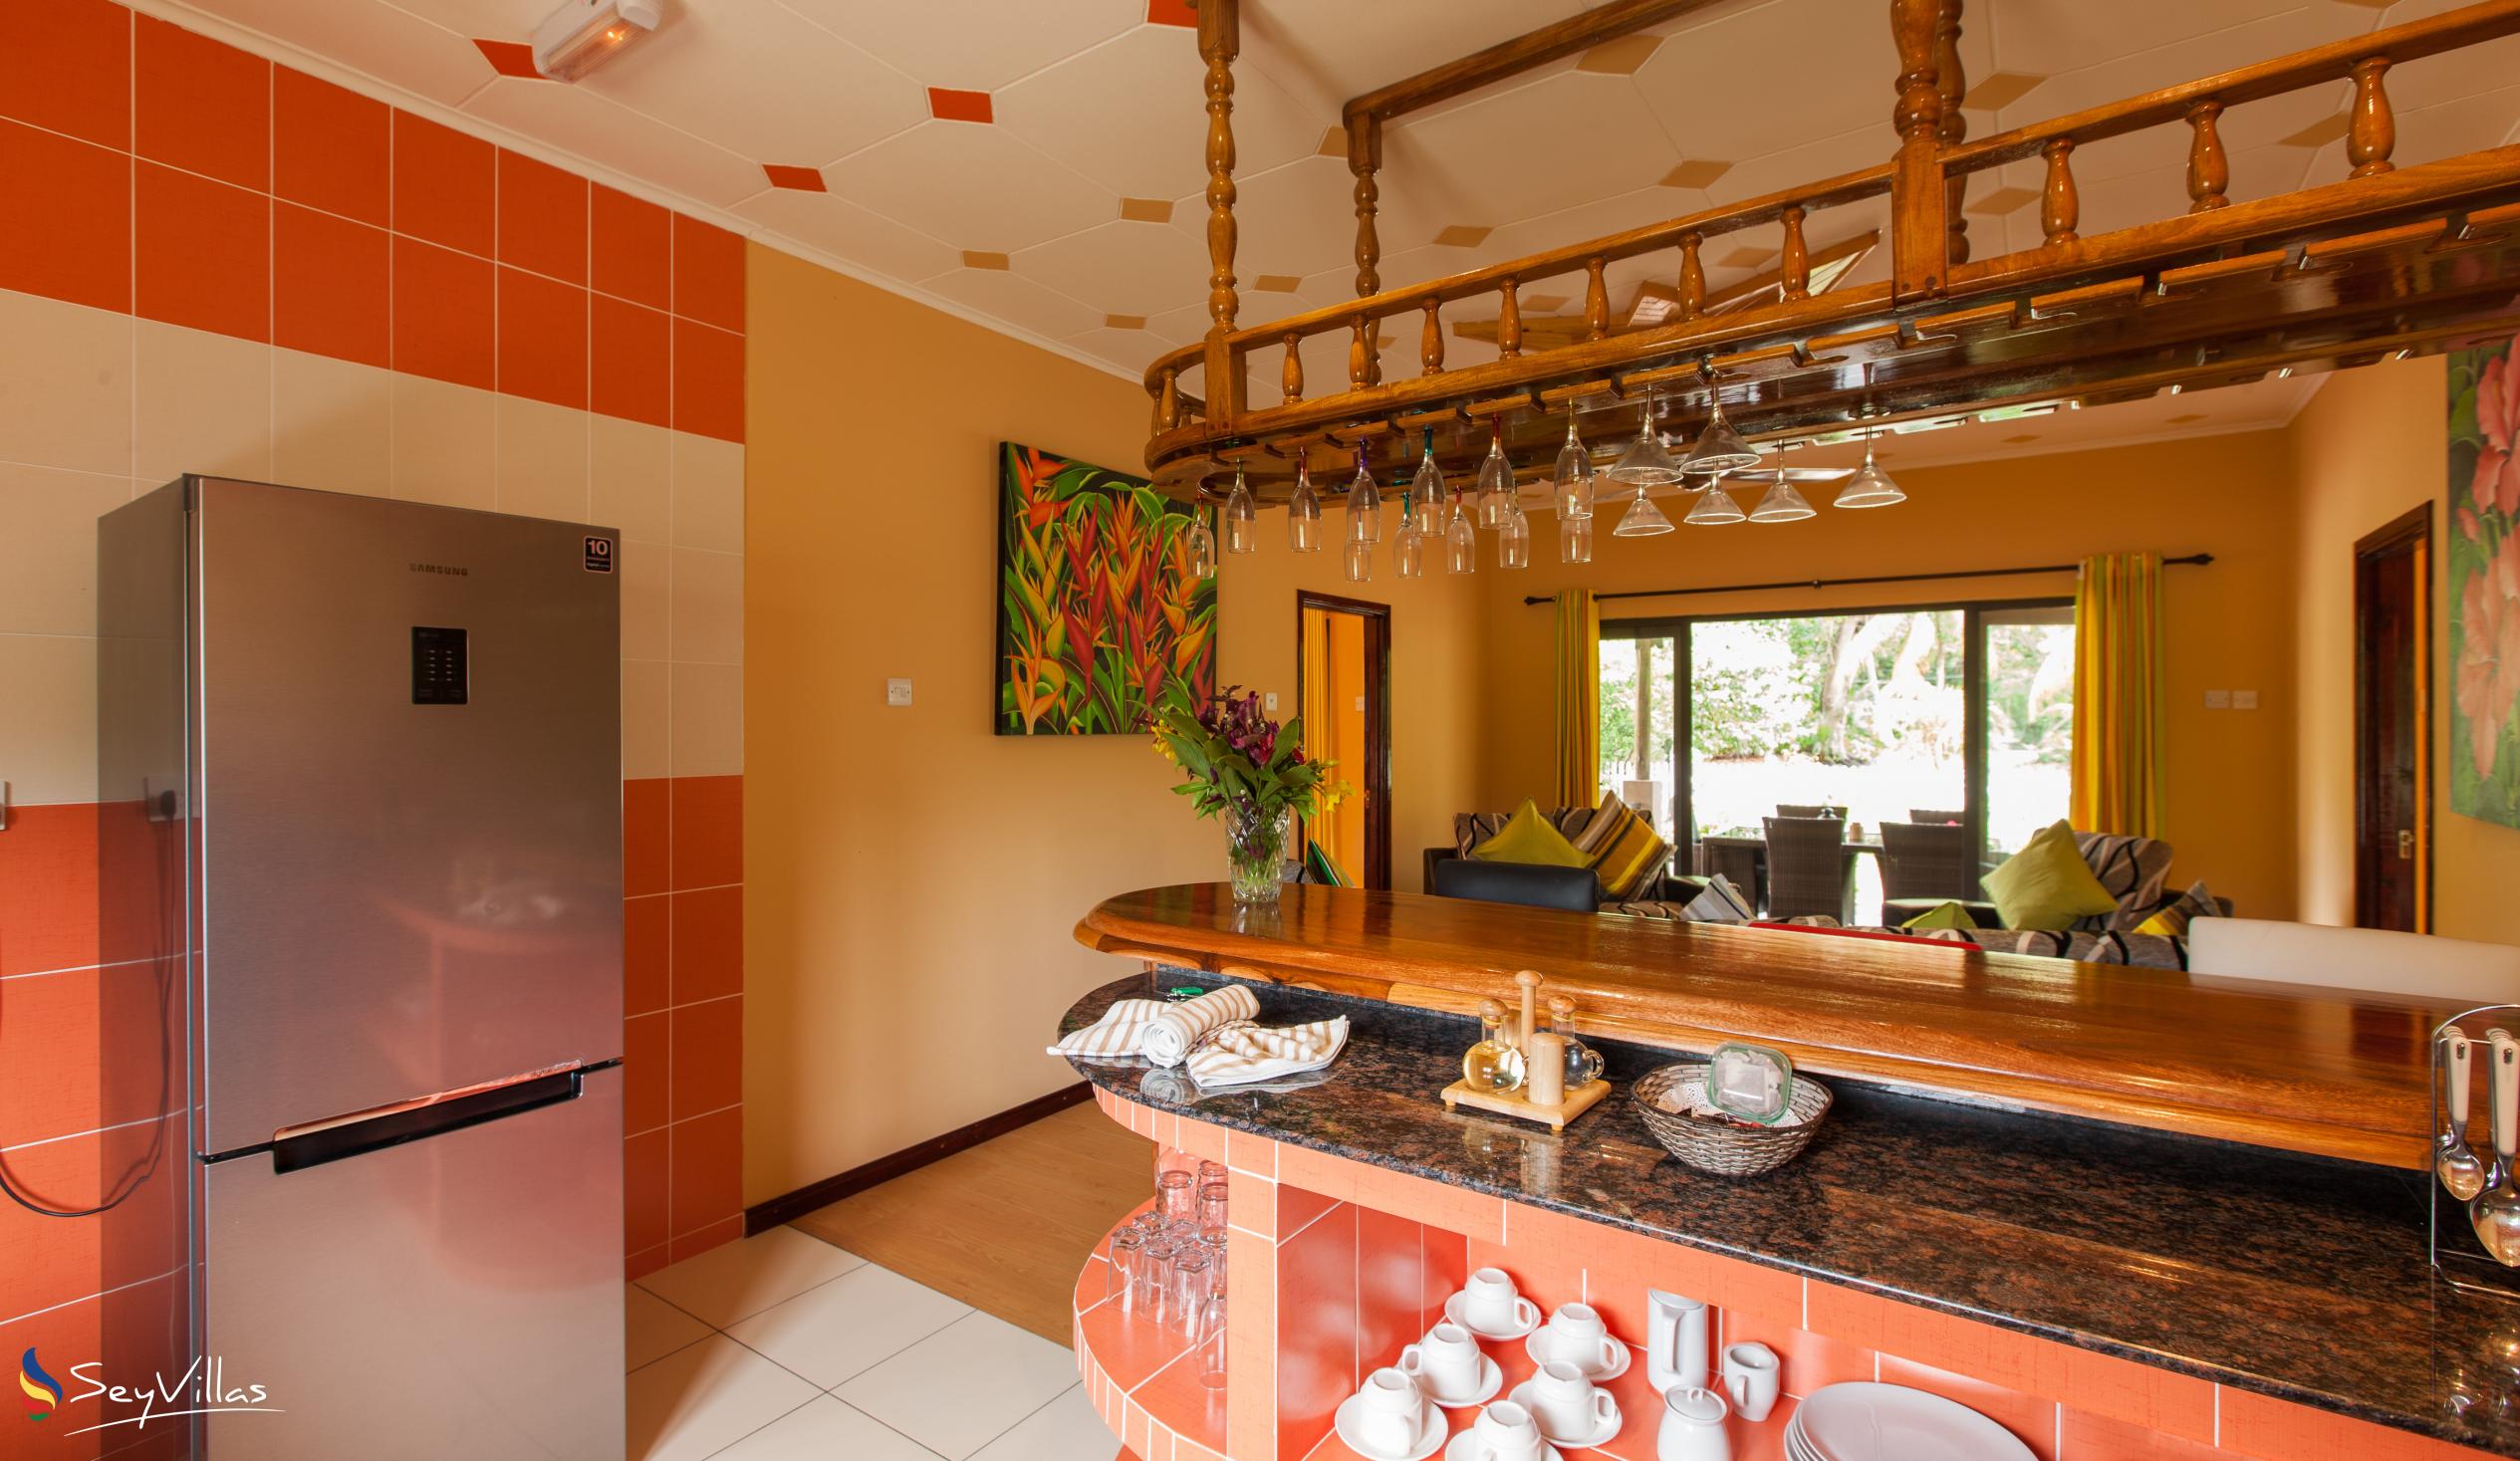 Photo 73: Casa de Leela - 2-Bedroom Luxury Bungalow with Private Plunge Pool - La Digue (Seychelles)